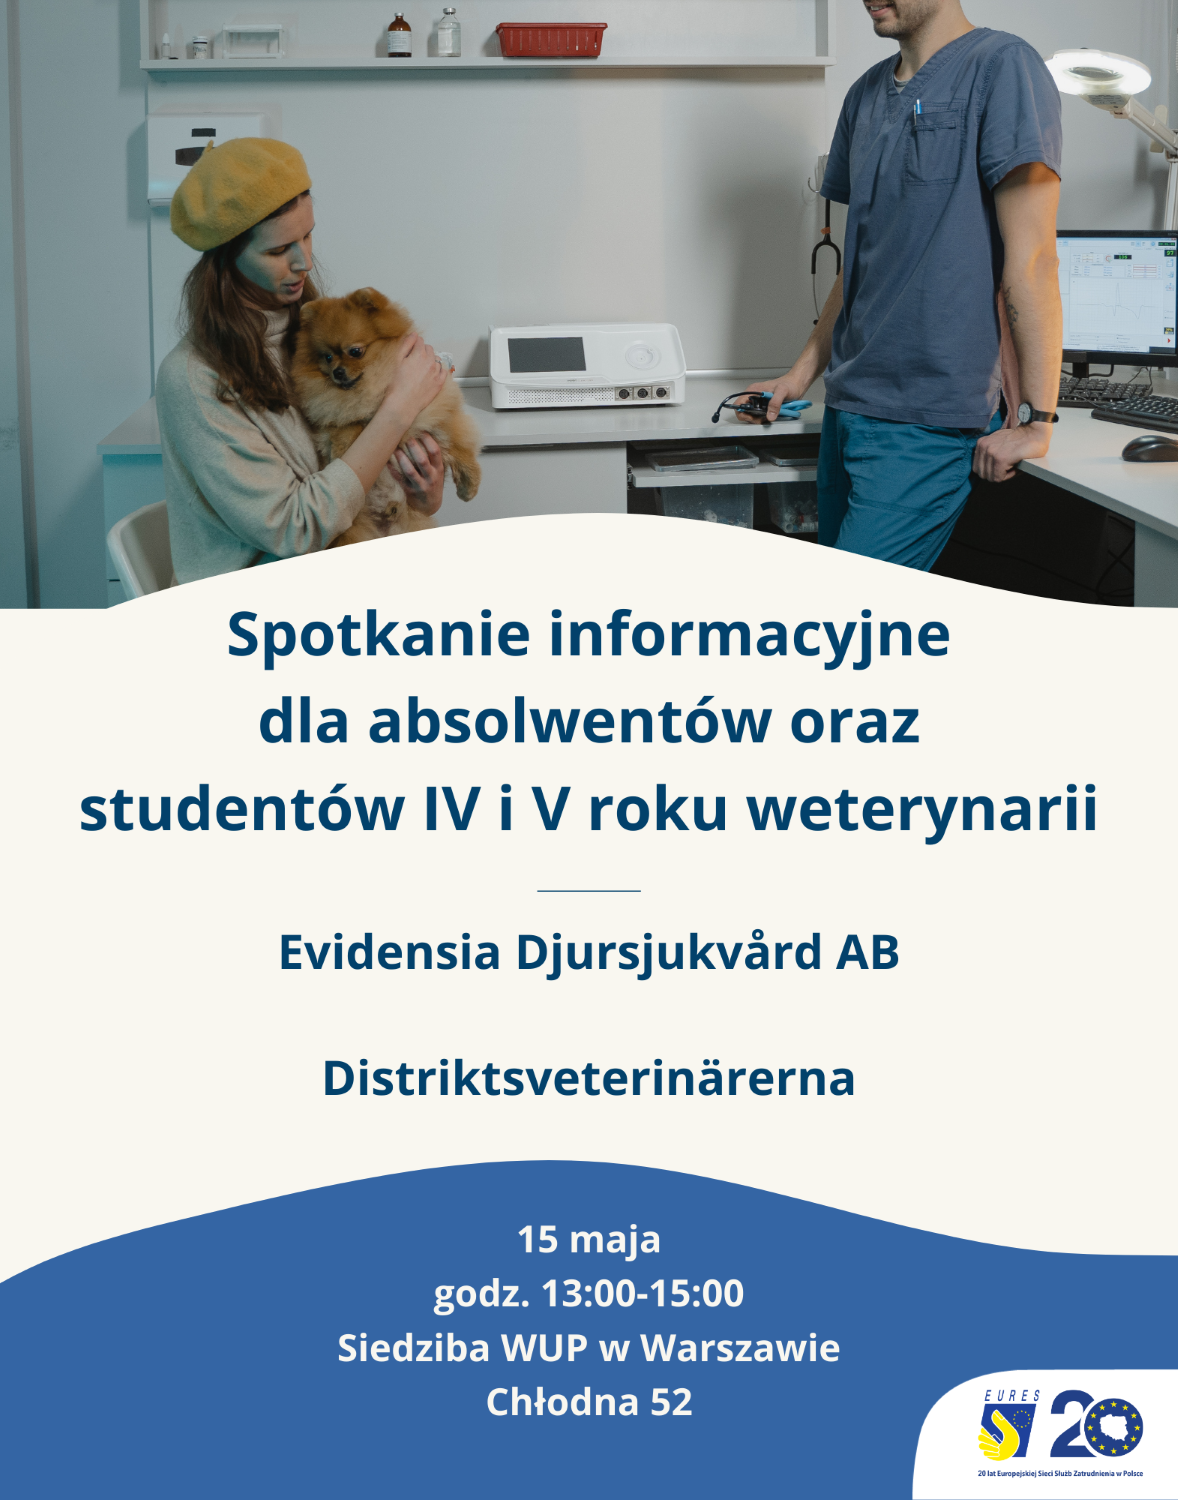 Plakat promujący spotkanie informacyjne zorganizowane we współpracy z EURES Szwecja dot. zatrudnienia weterynarzy w Szwecji. Spotkanie odbędzie się w warszawie w dniach 15-16 maja